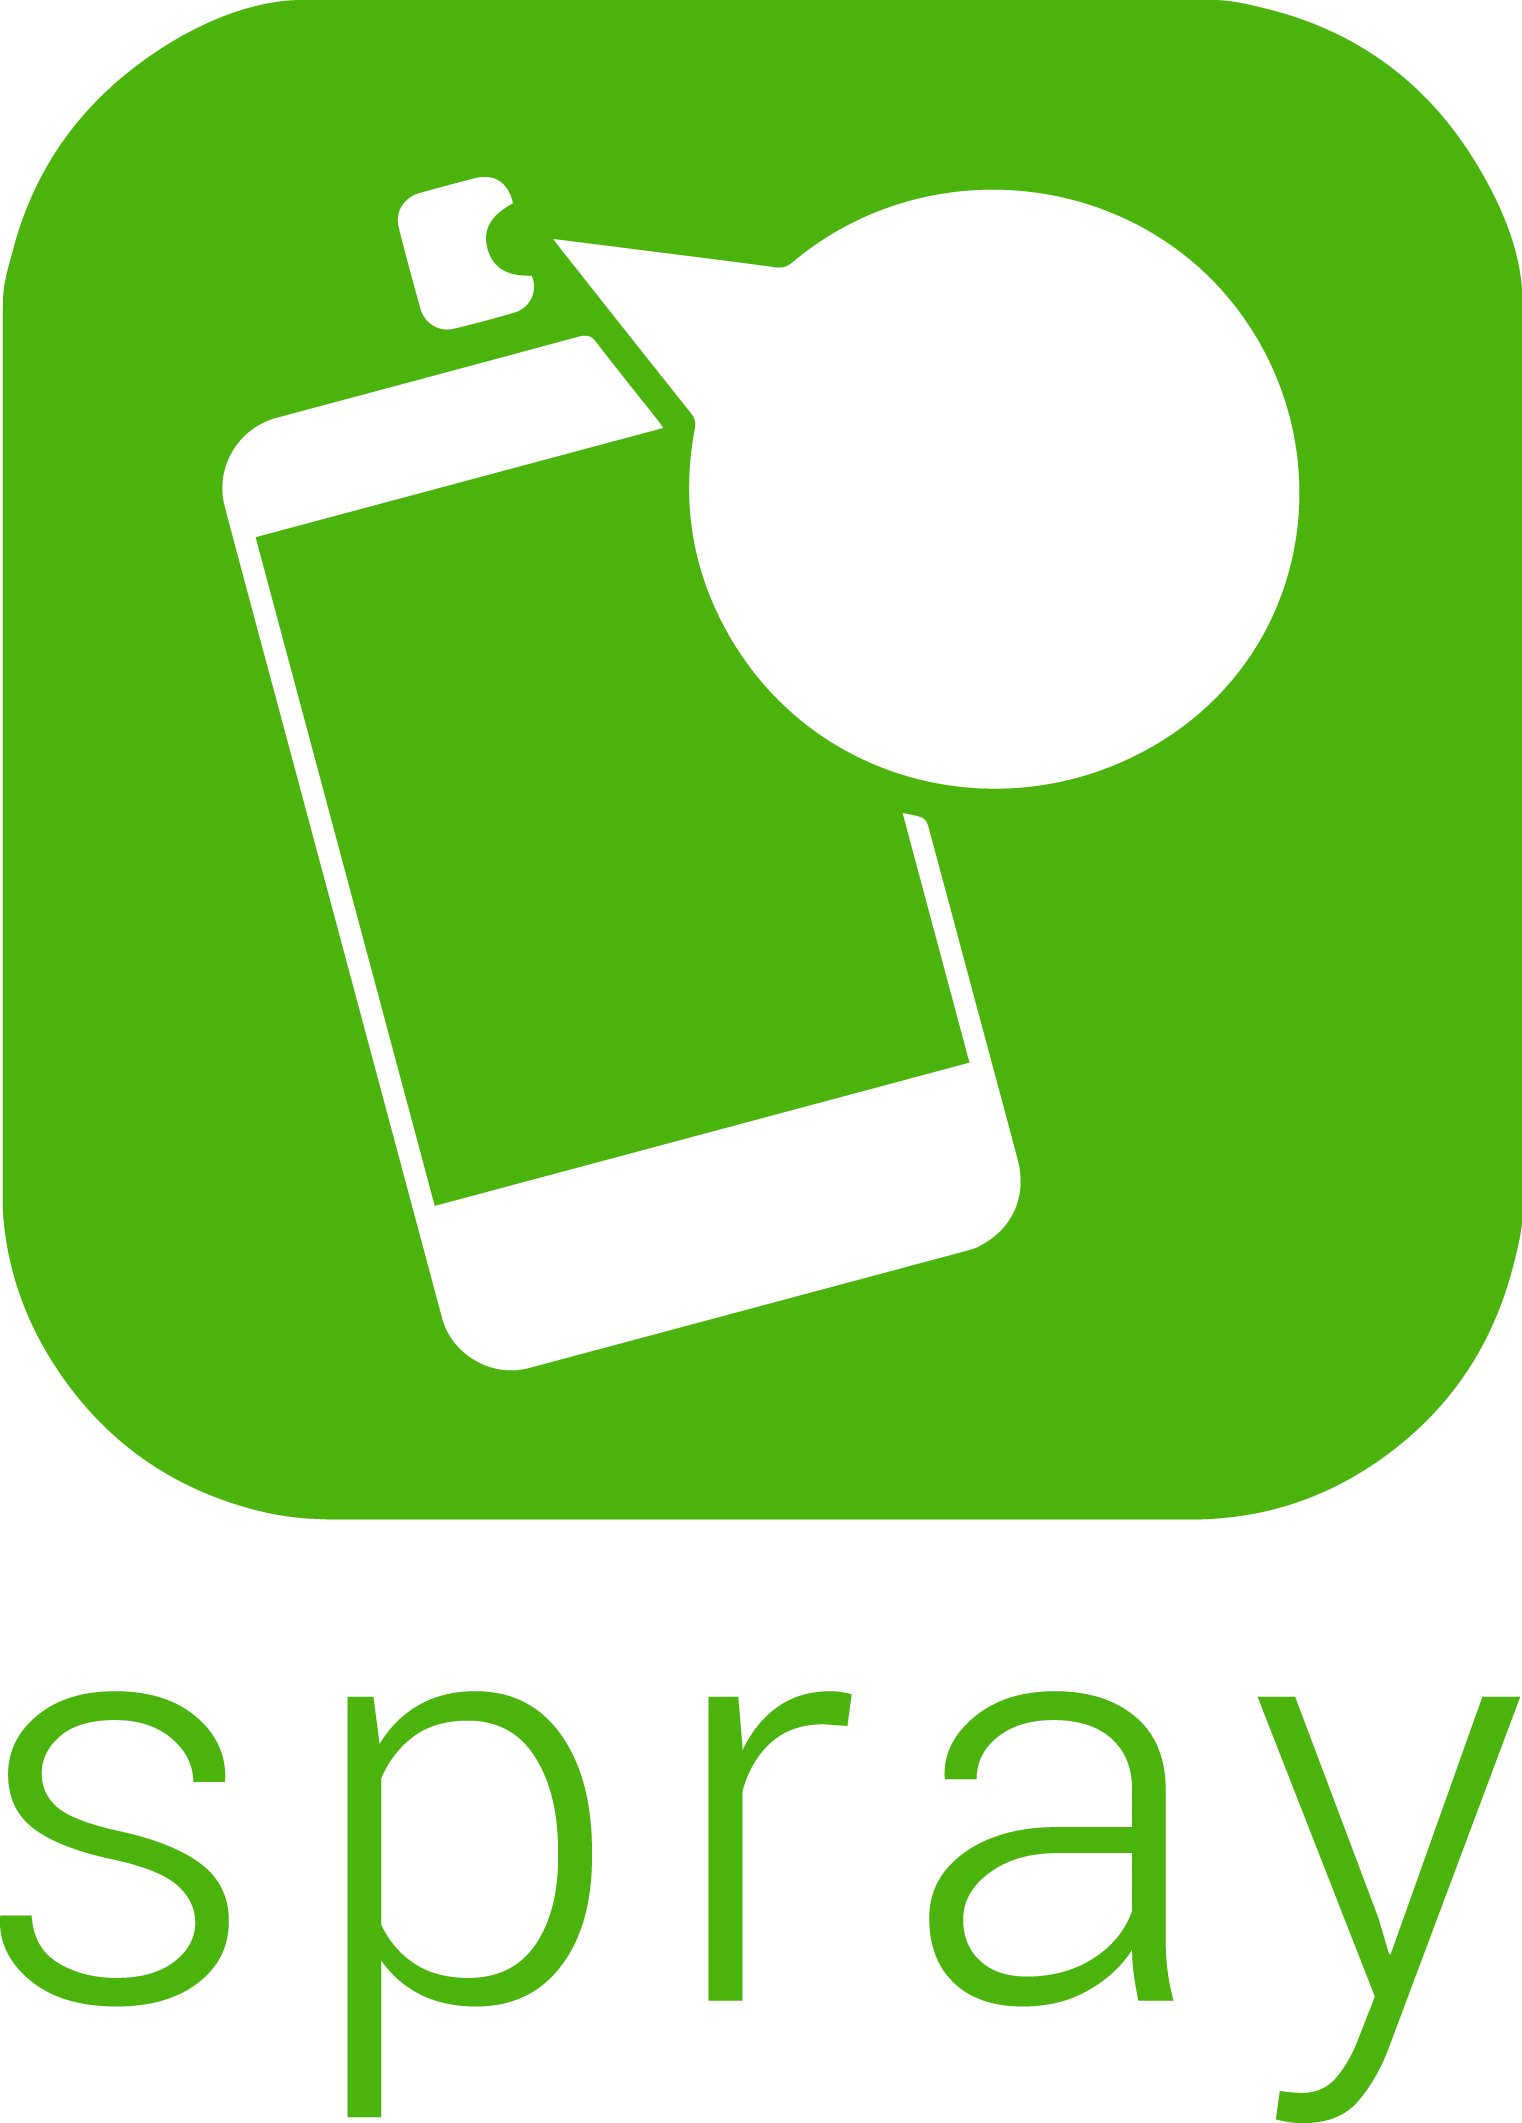 Trademark Logo SPRAY